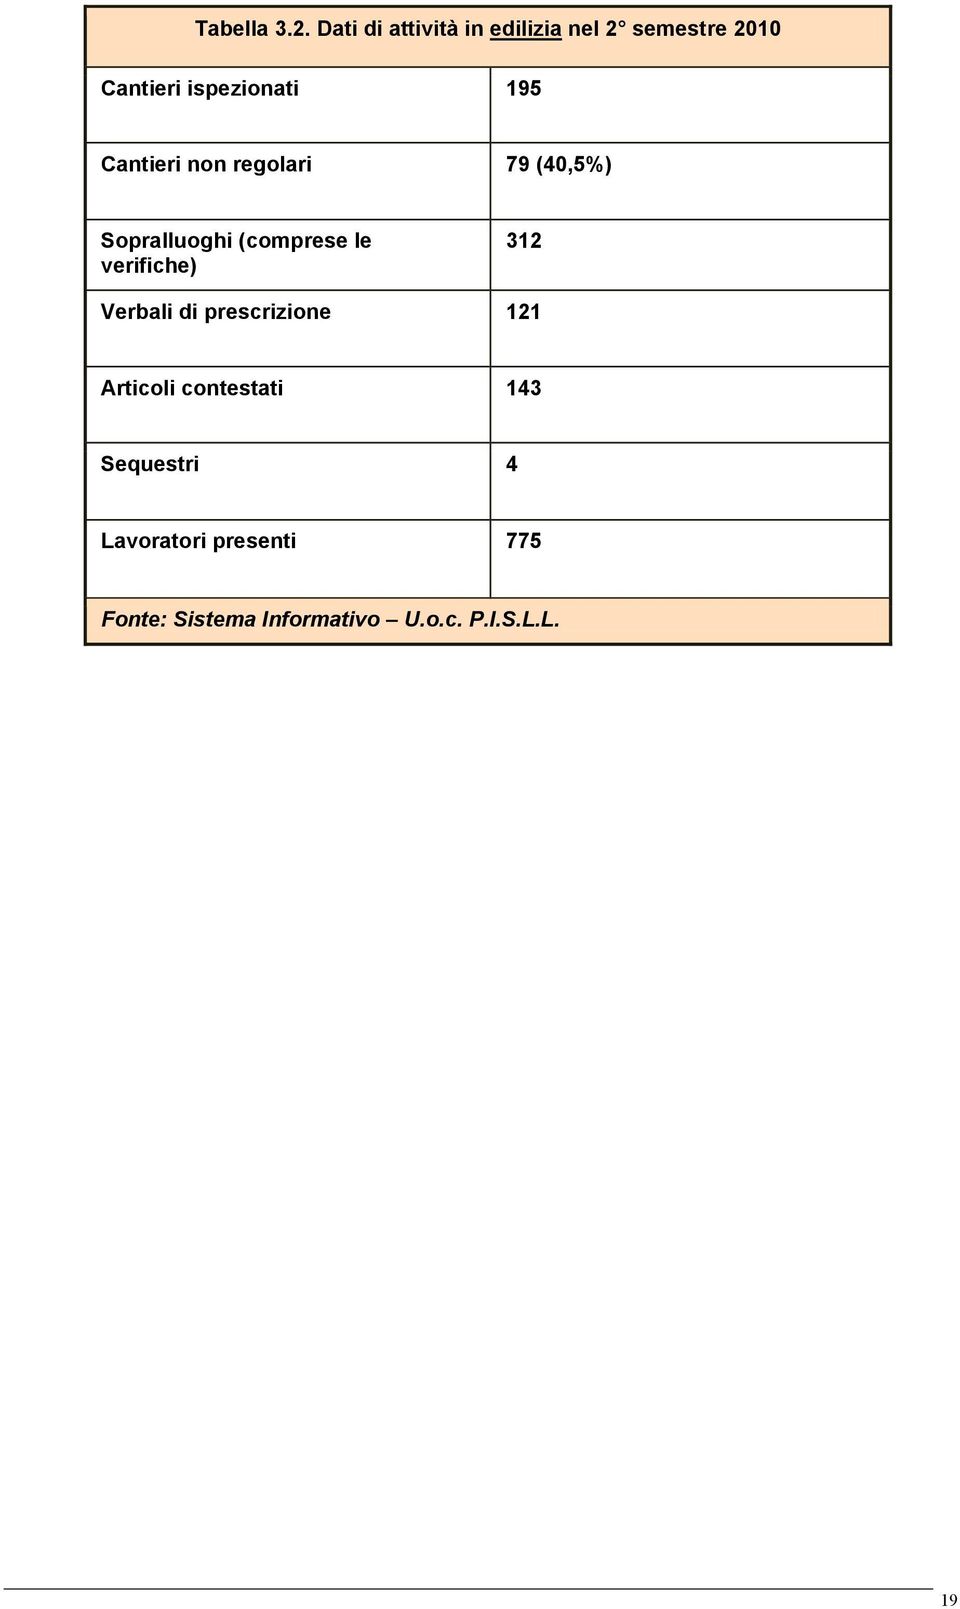 Cantieri non regolari 79 (40,5%) Sopralluoghi (comprese le verifiche) 312